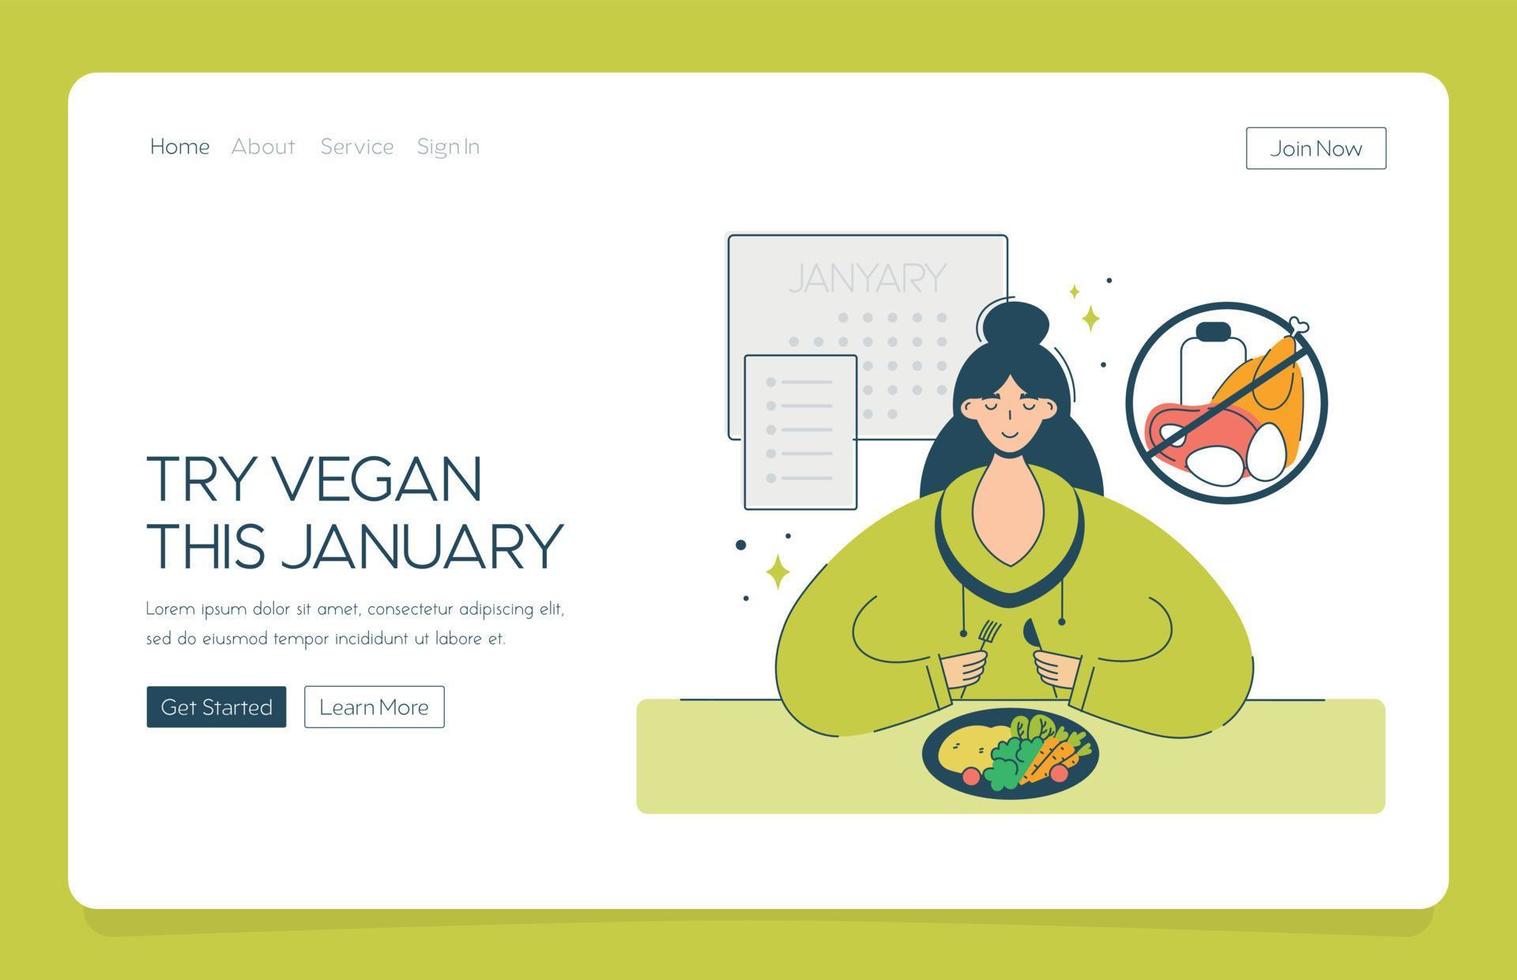 application web atterrissant une femme heureuse commence un régime végétarien en janvier. le concept de véganisme, défi annuel veganuary encourageant les gens à suivre un mode de vie végétalien. vecteur